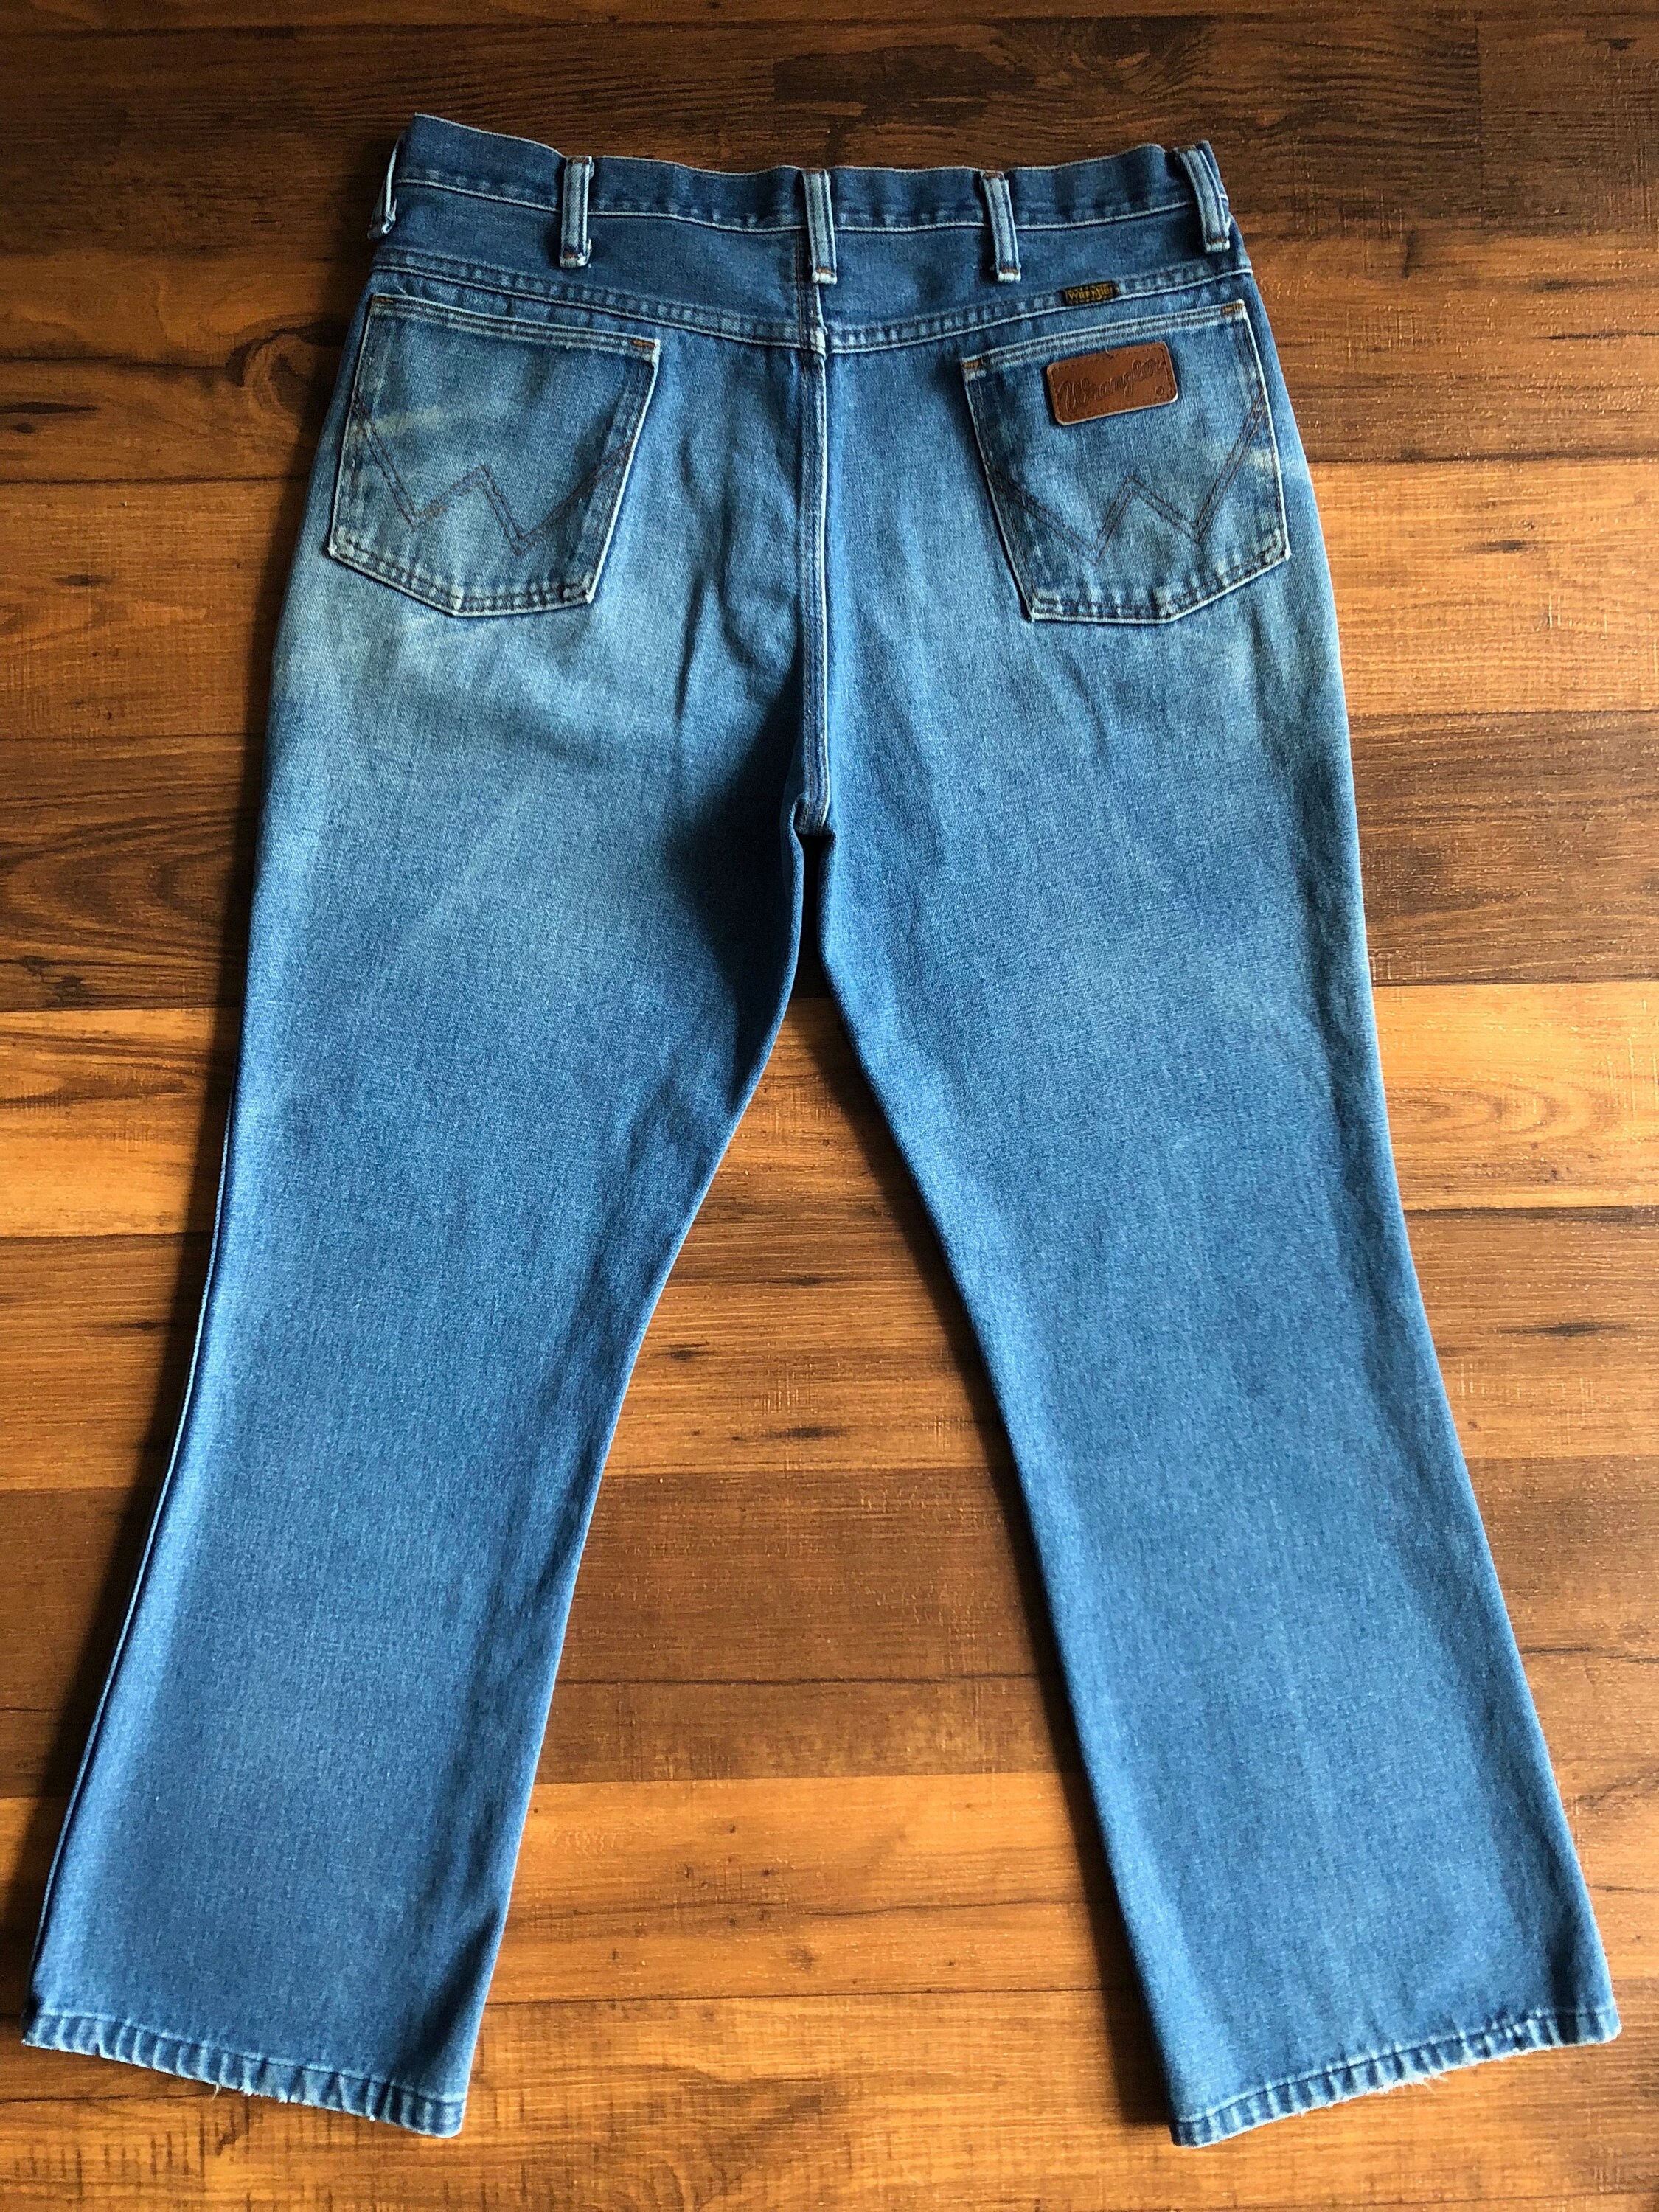 Vintage Men's 70's Wrangler Jeans Blue Bootcut Leg | Etsy